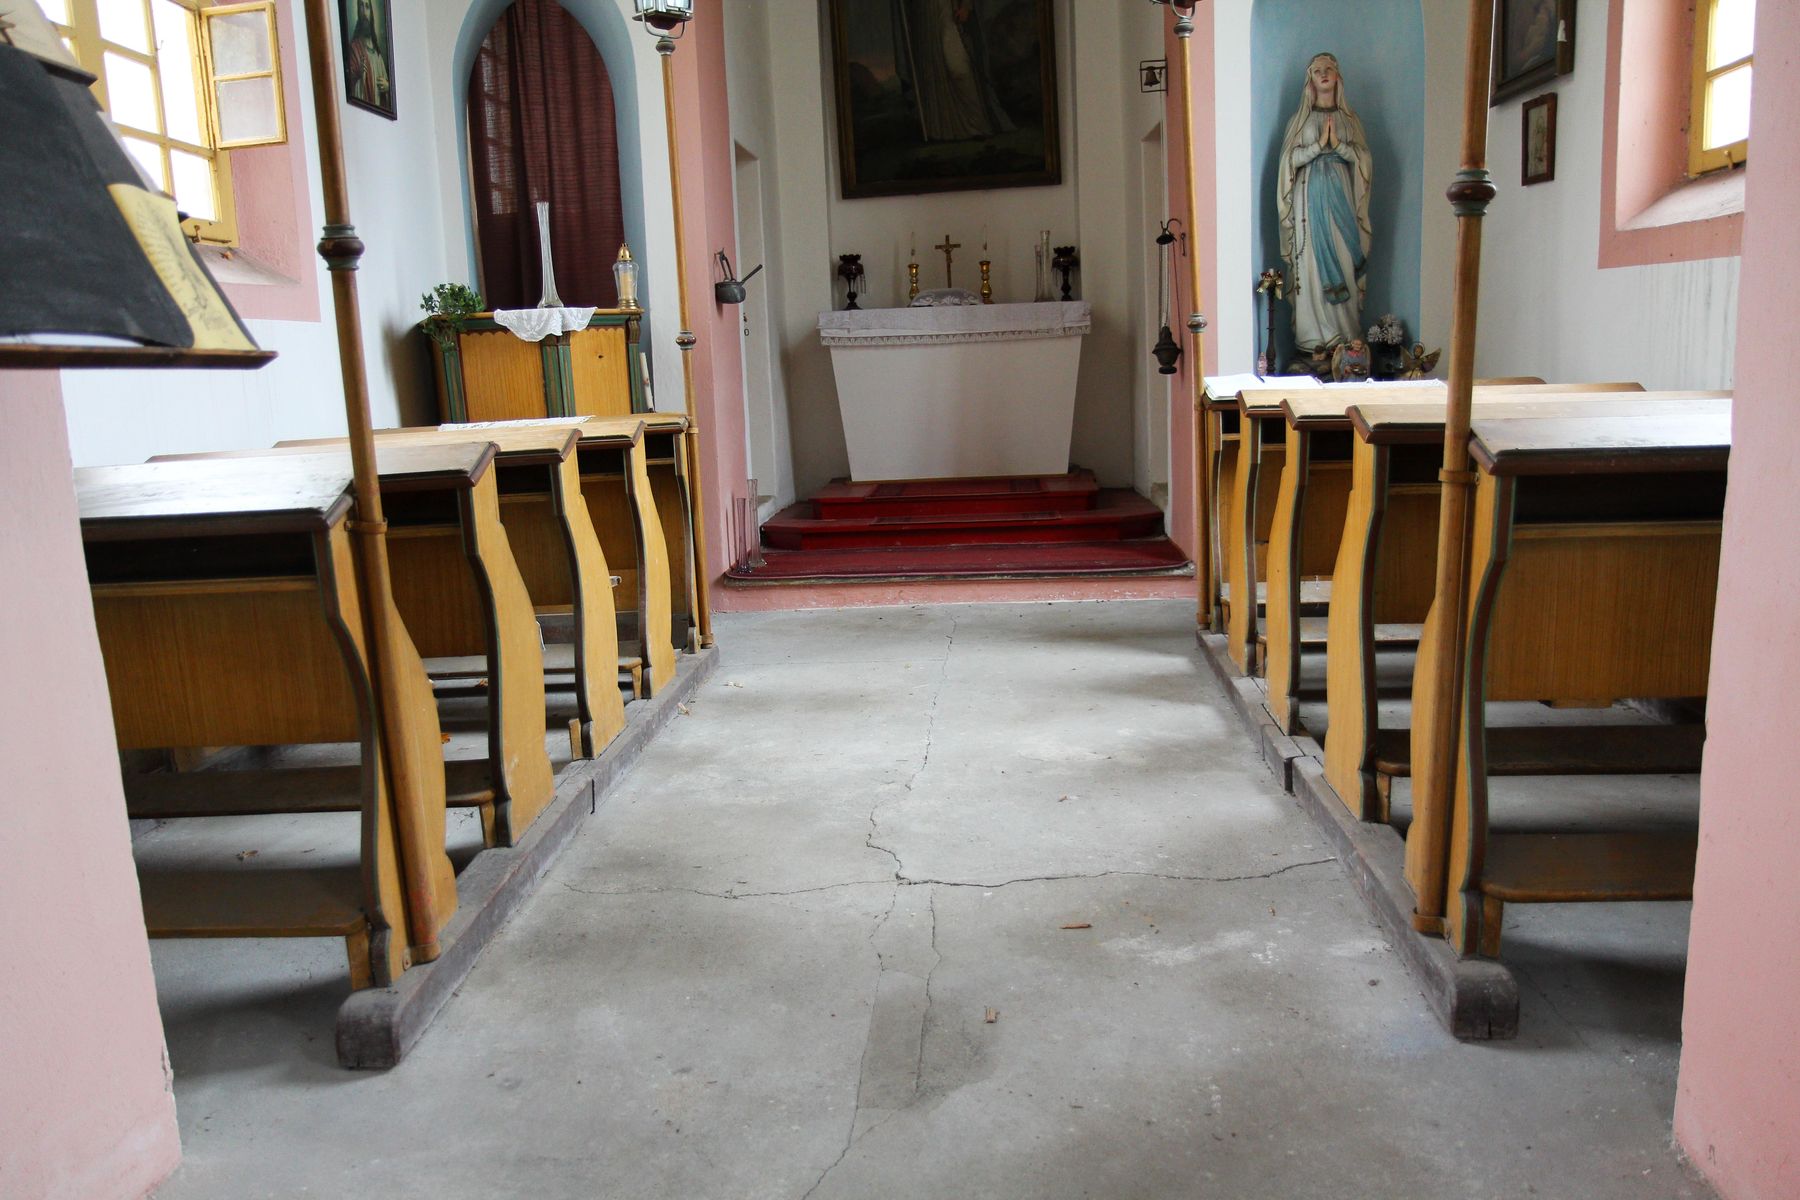 Restaurovali jsme kostelní lavice v kostele sv. Prokopa v Otvovicích - Restaurování kostelní lavice před restaurováním 05